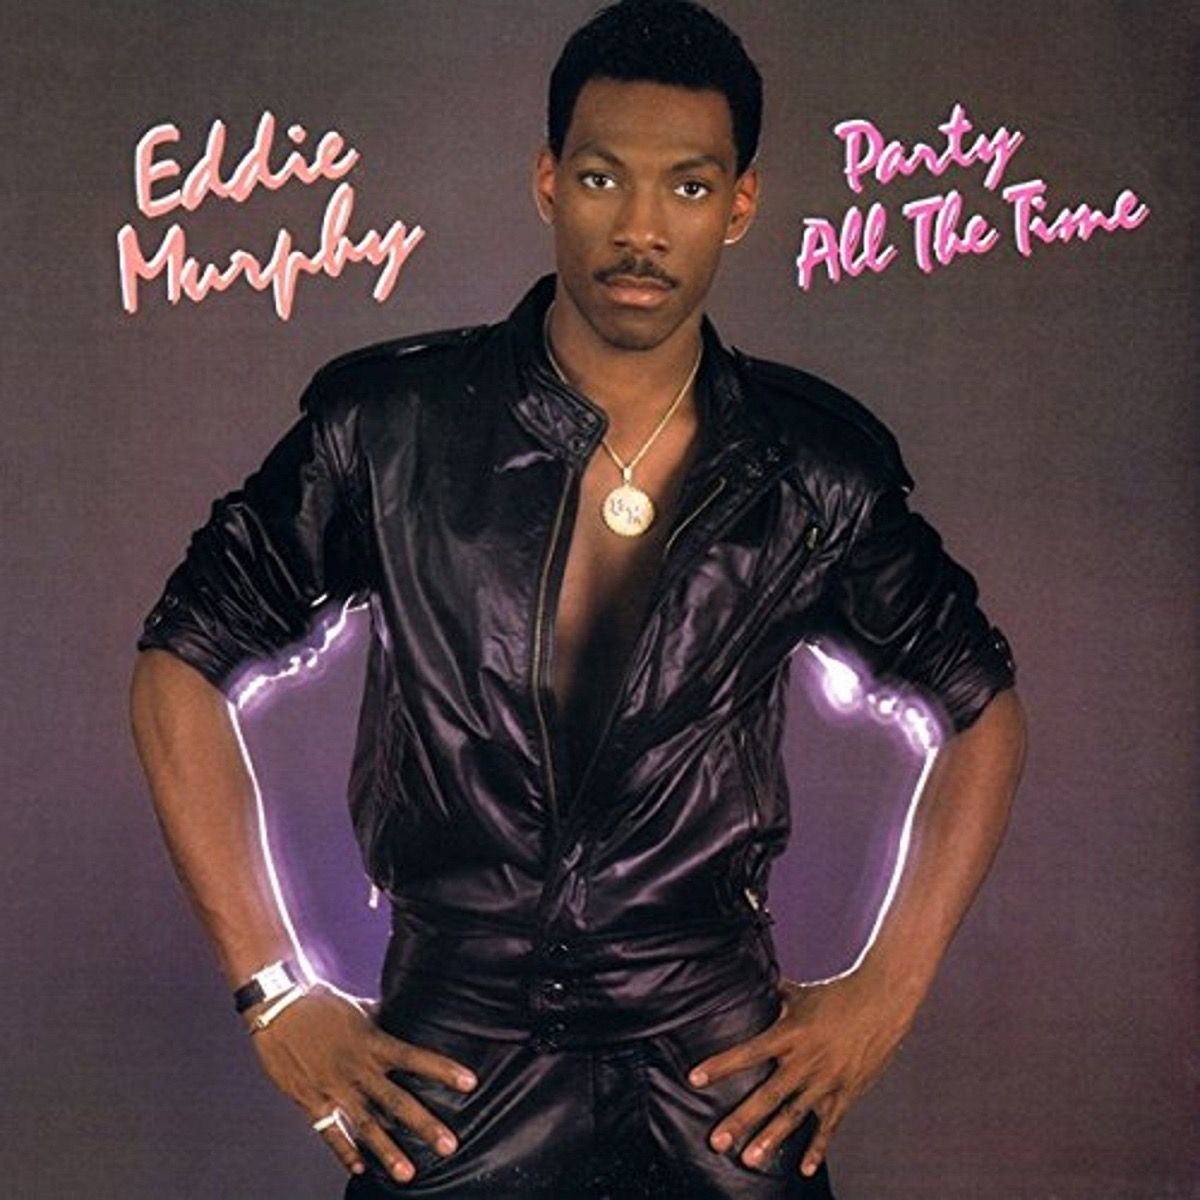 Kulit album Eddie Murphy Party Sepanjang Masa